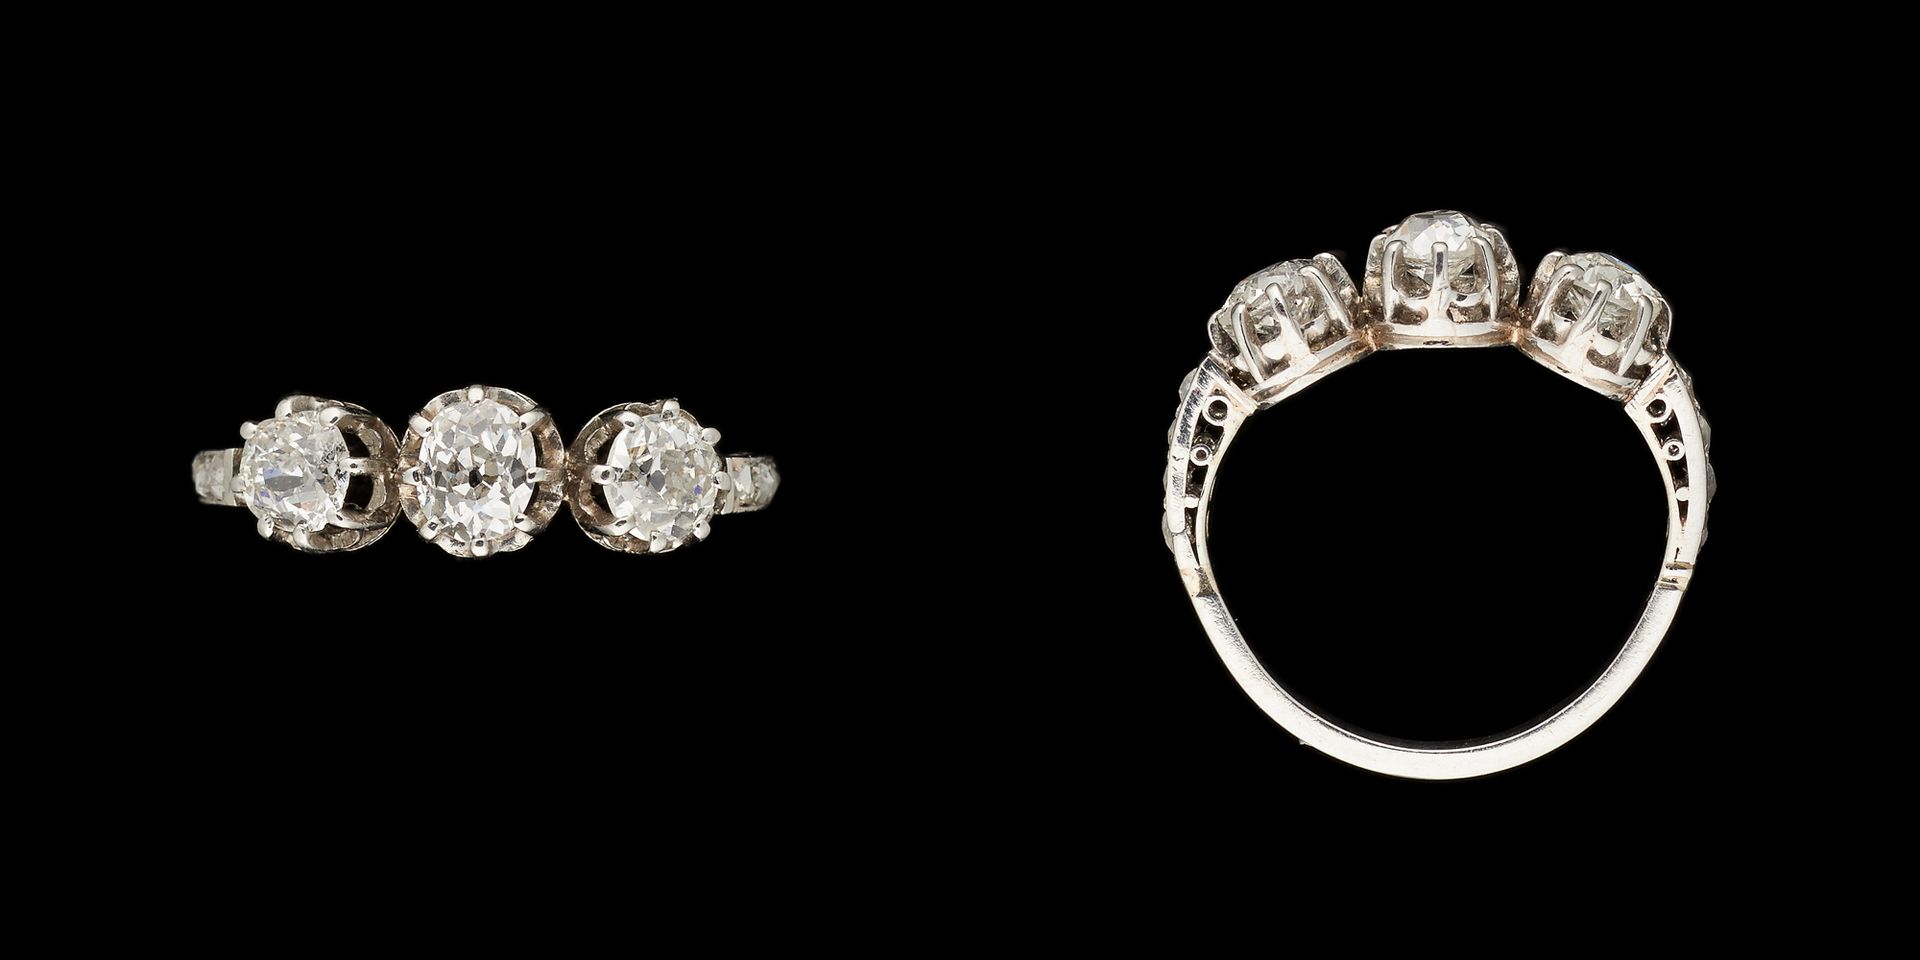 Joaillerie. 珠宝：铂金戒指，镶嵌三颗老式切割钻石，重量为+/- 0.80克拉。

手指大小：+/- 50。